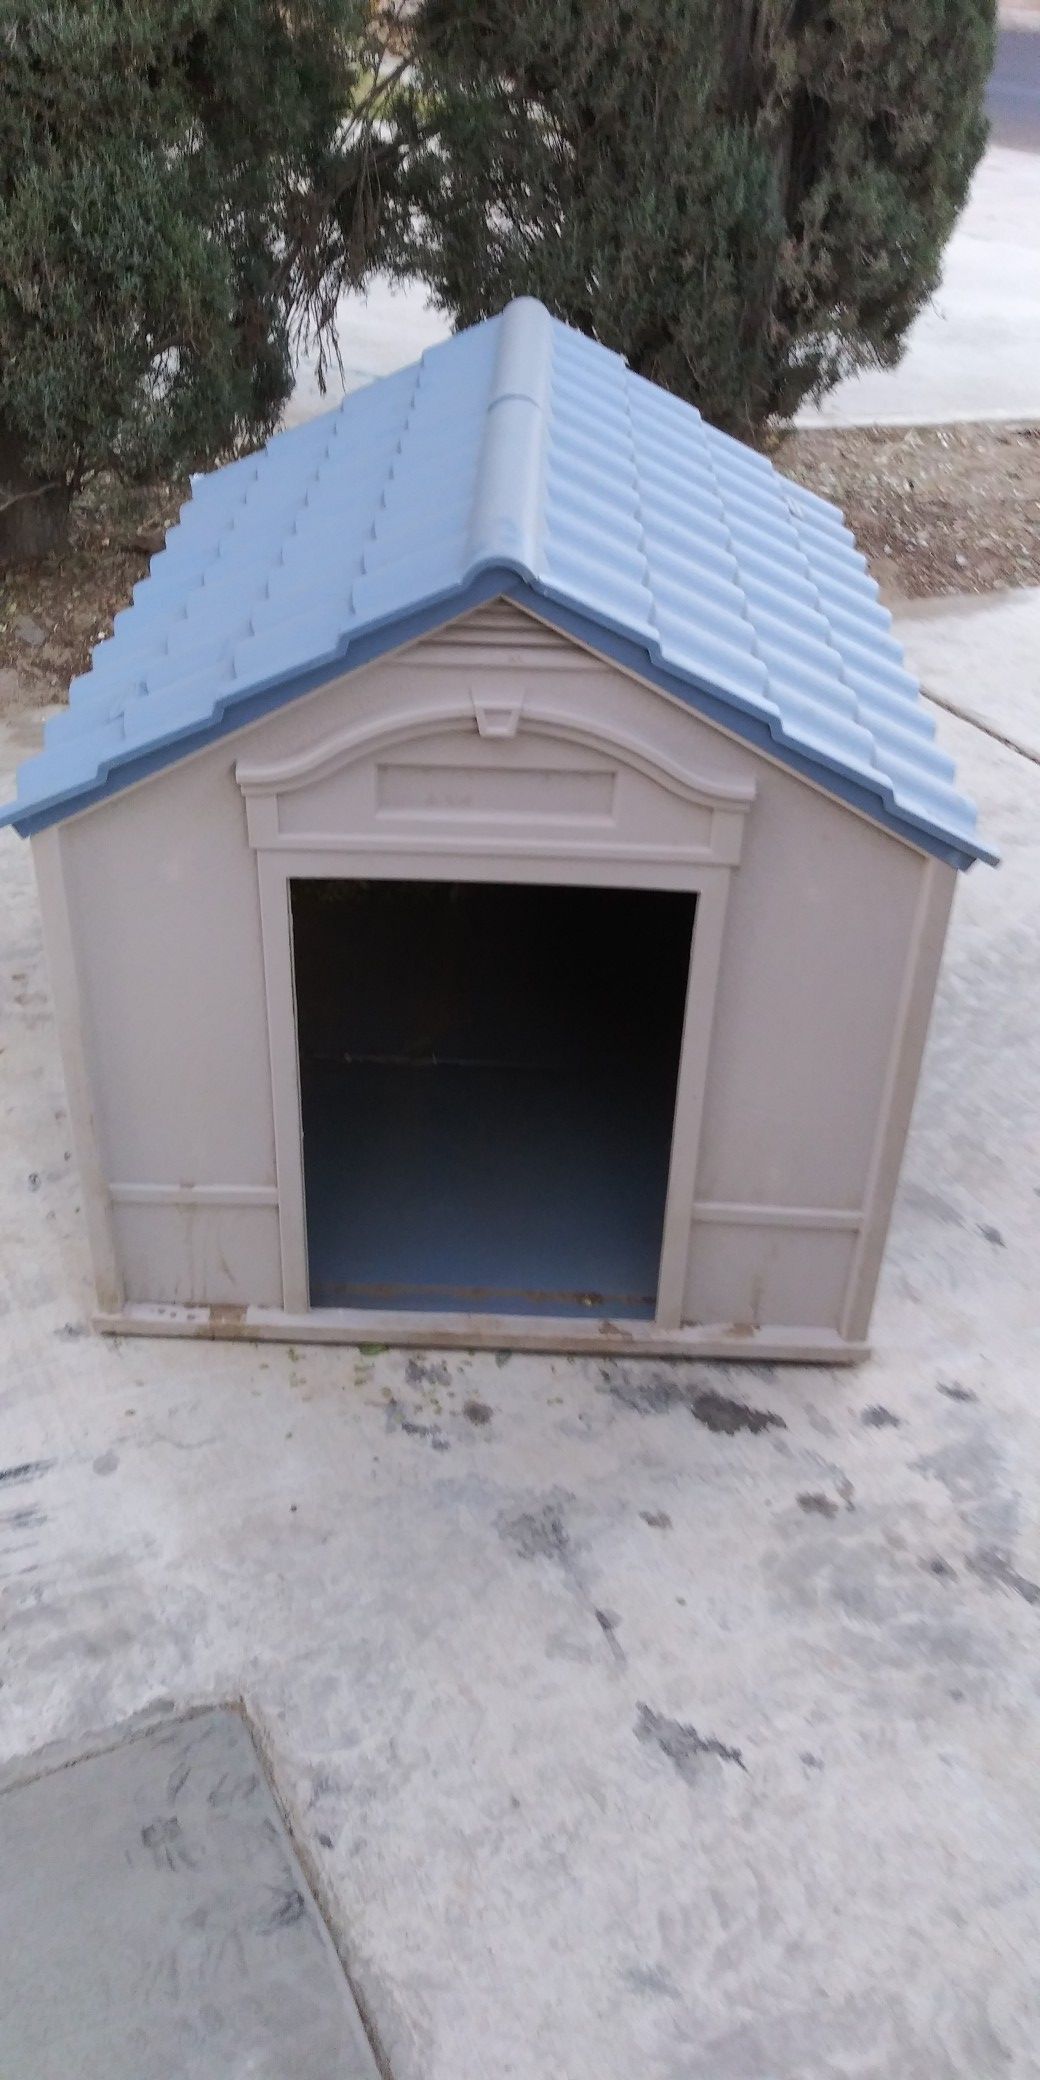 Medium sized dog house